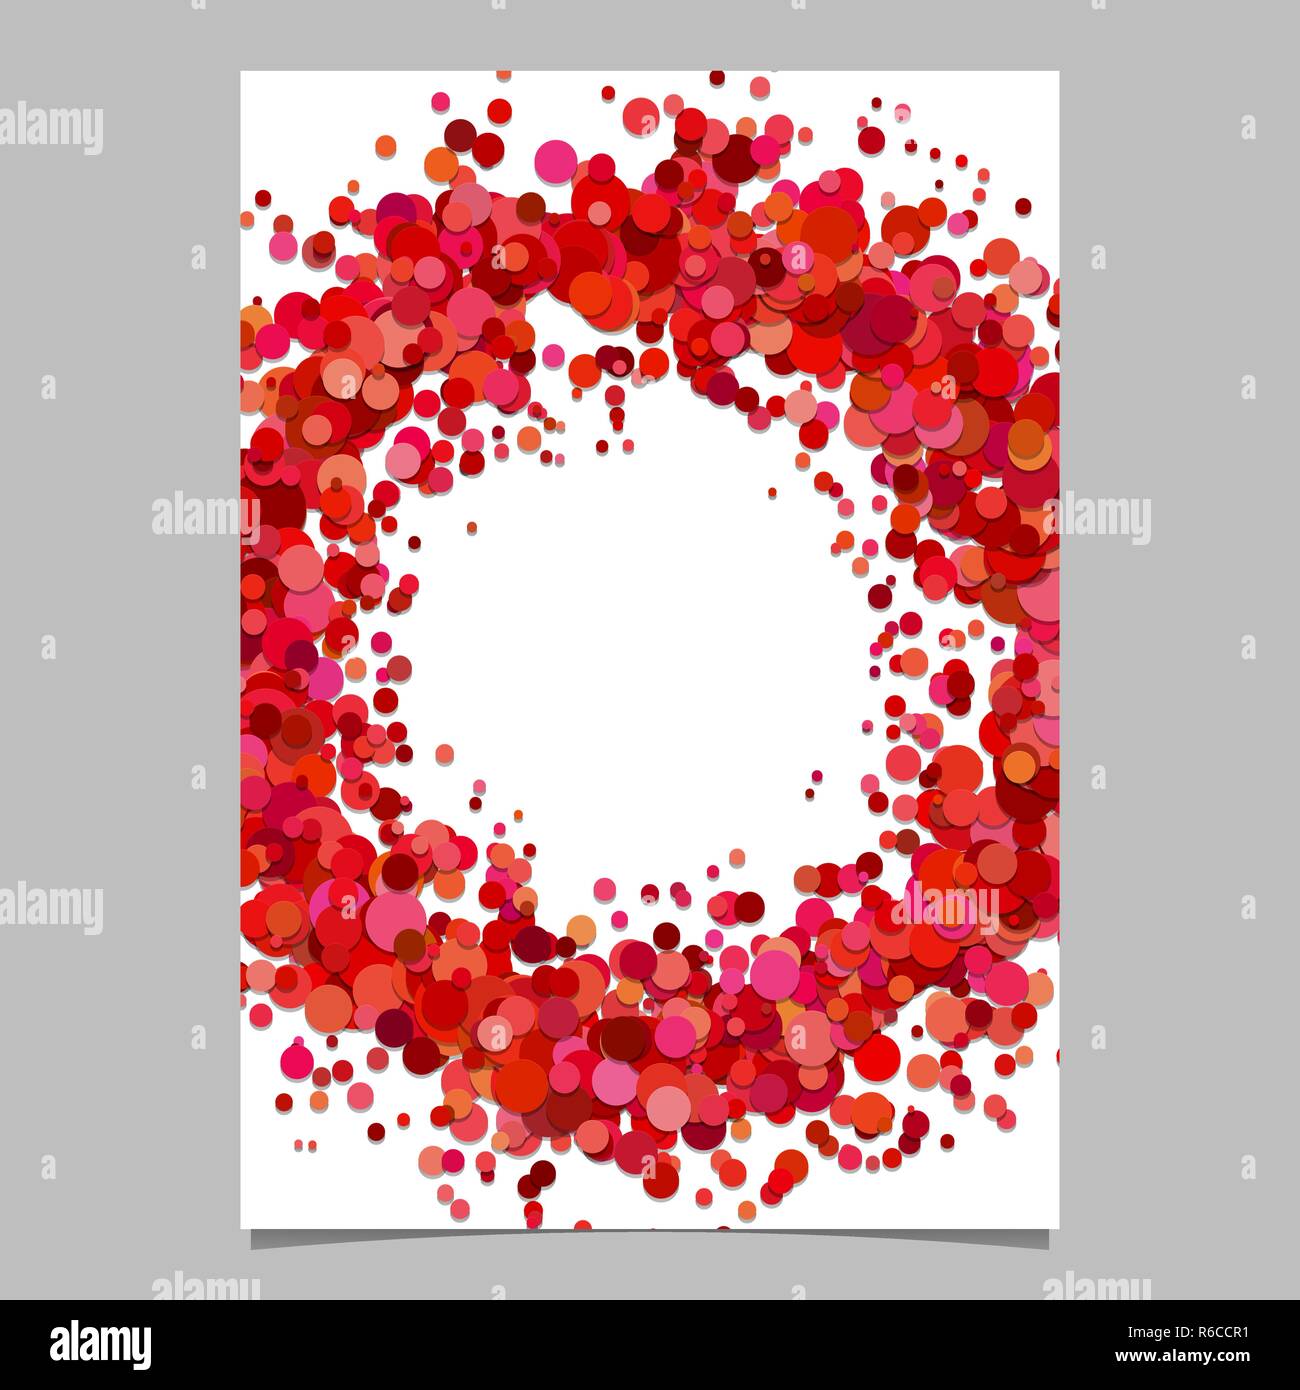 Leer Abstrakte Konfetti Ring Flyer Hintergrund Vorlage Aus Verteilten Punkte Stock Vektorgrafik Alamy